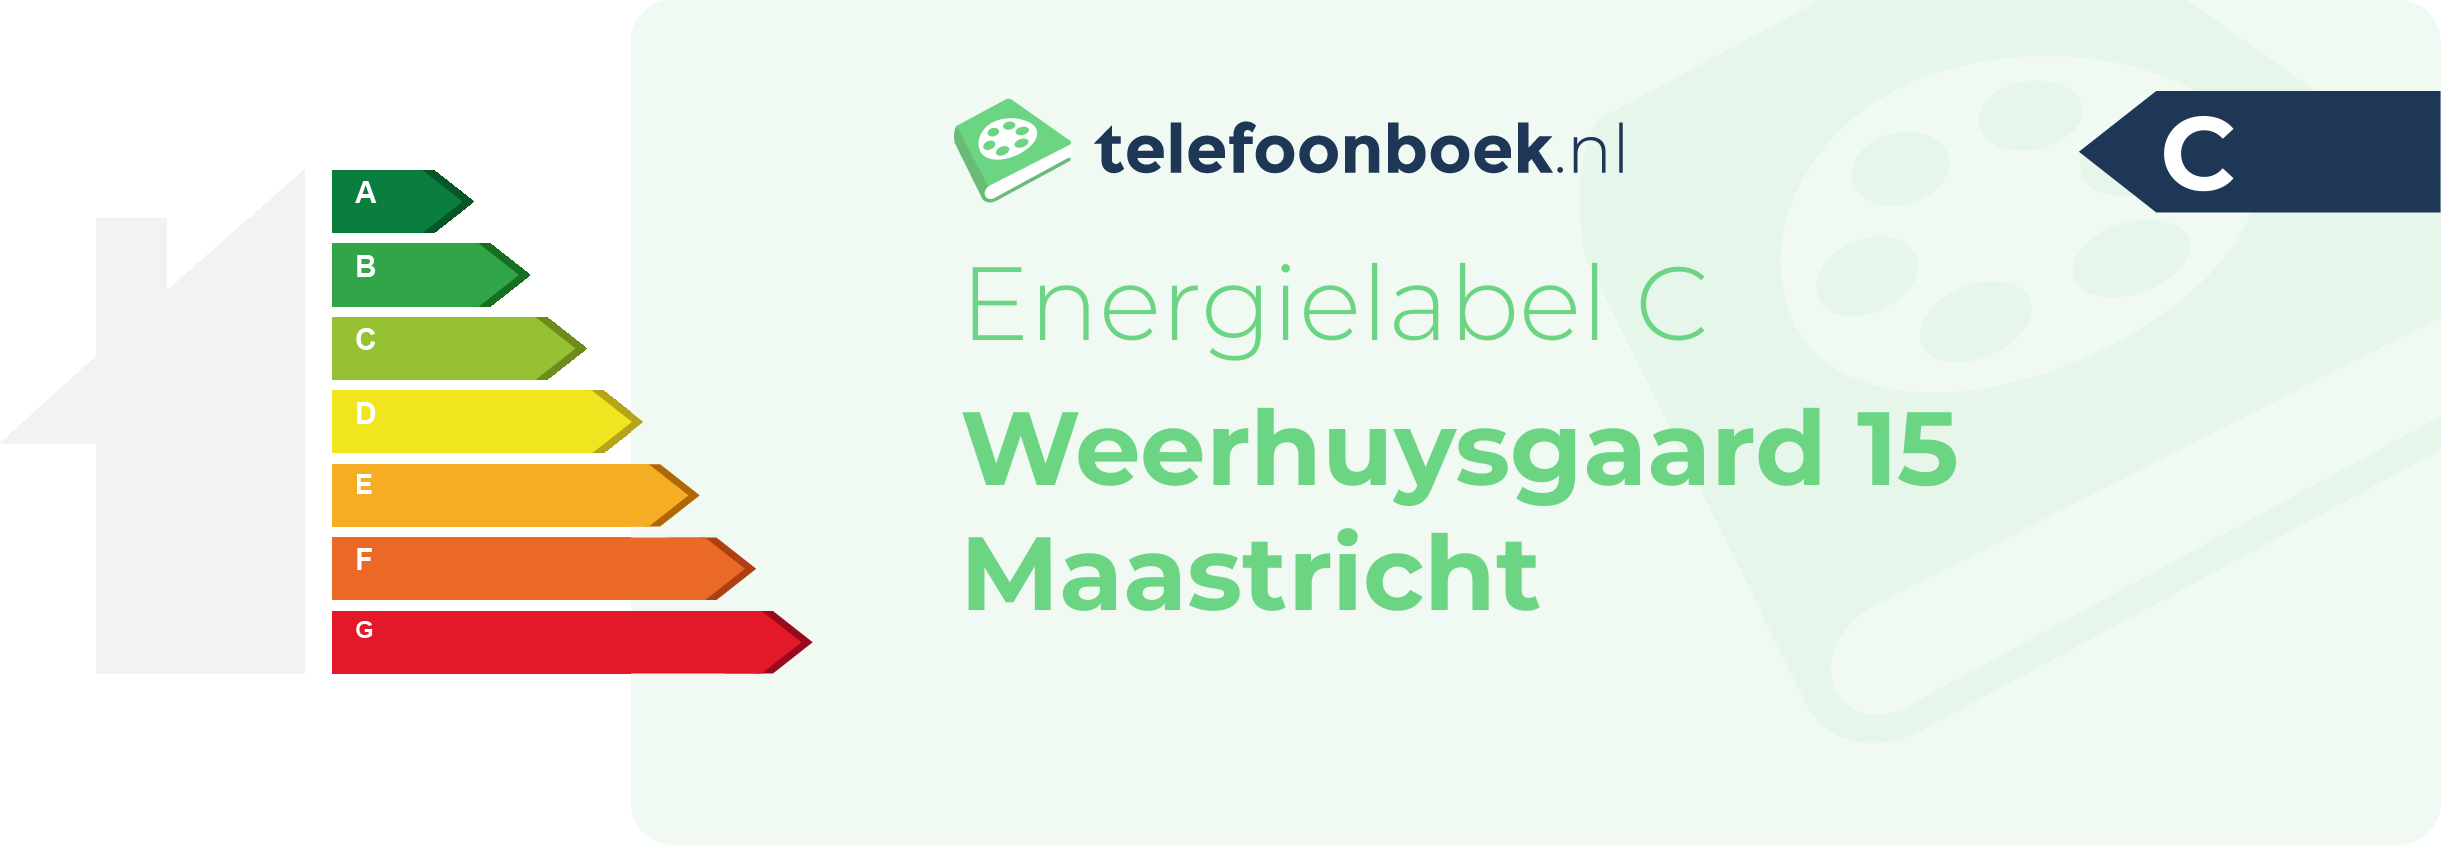 Energielabel Weerhuysgaard 15 Maastricht